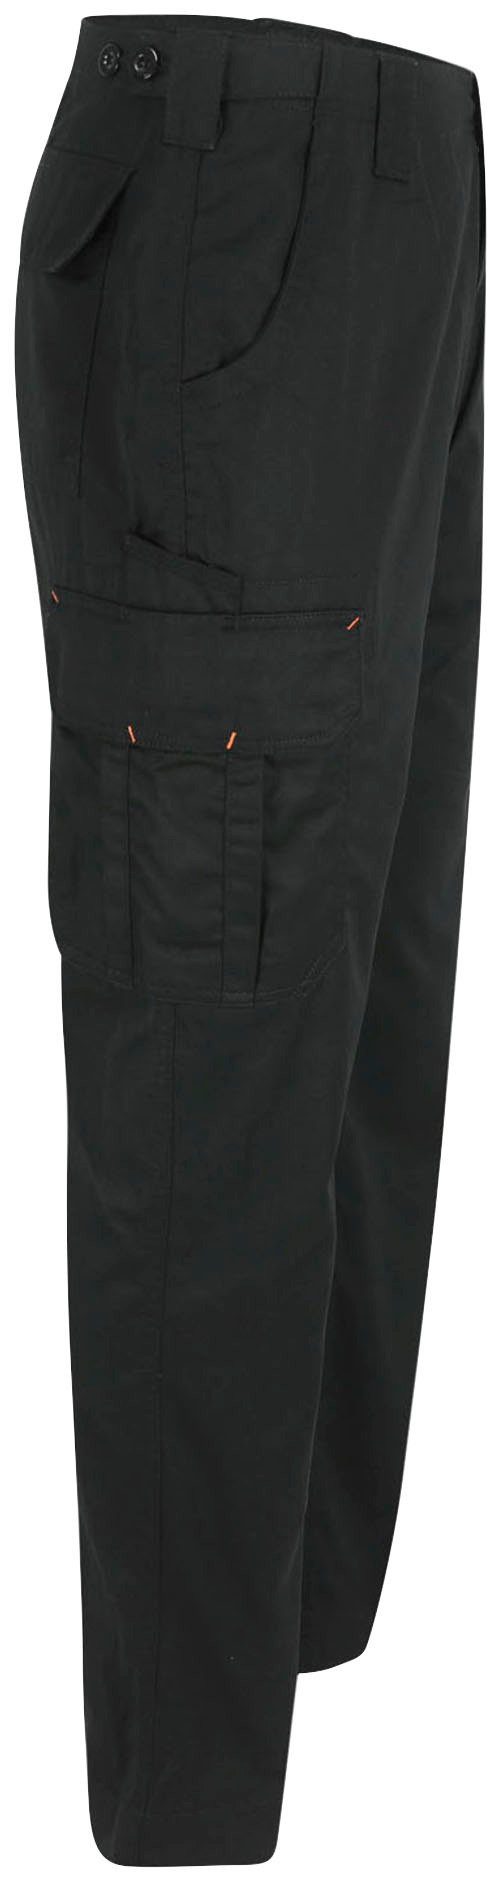 Herock Arbeitshose Thor Hose Wasserabweisend, einstellbarer leicht, Farben 7 Bund, schwarz viele Taschen